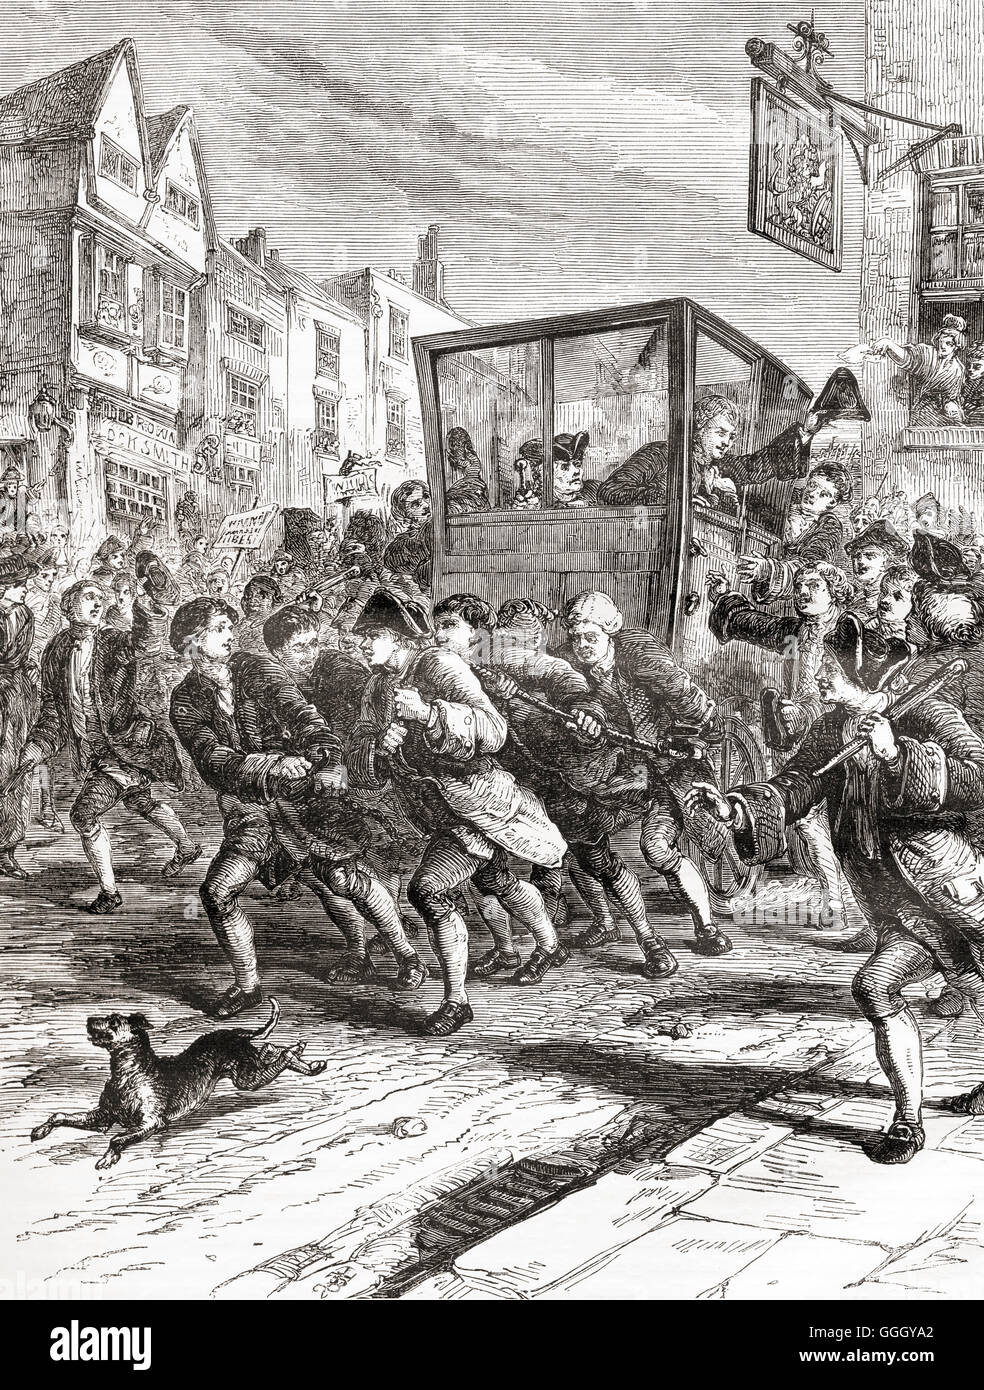 L'entrée triomphale de John Wilkes dans la ville de Londres après avoir été élu député de Middlesex en 1768. John Wilkes, 1725 - 1797. Radical anglais, journaliste et politicien. Banque D'Images